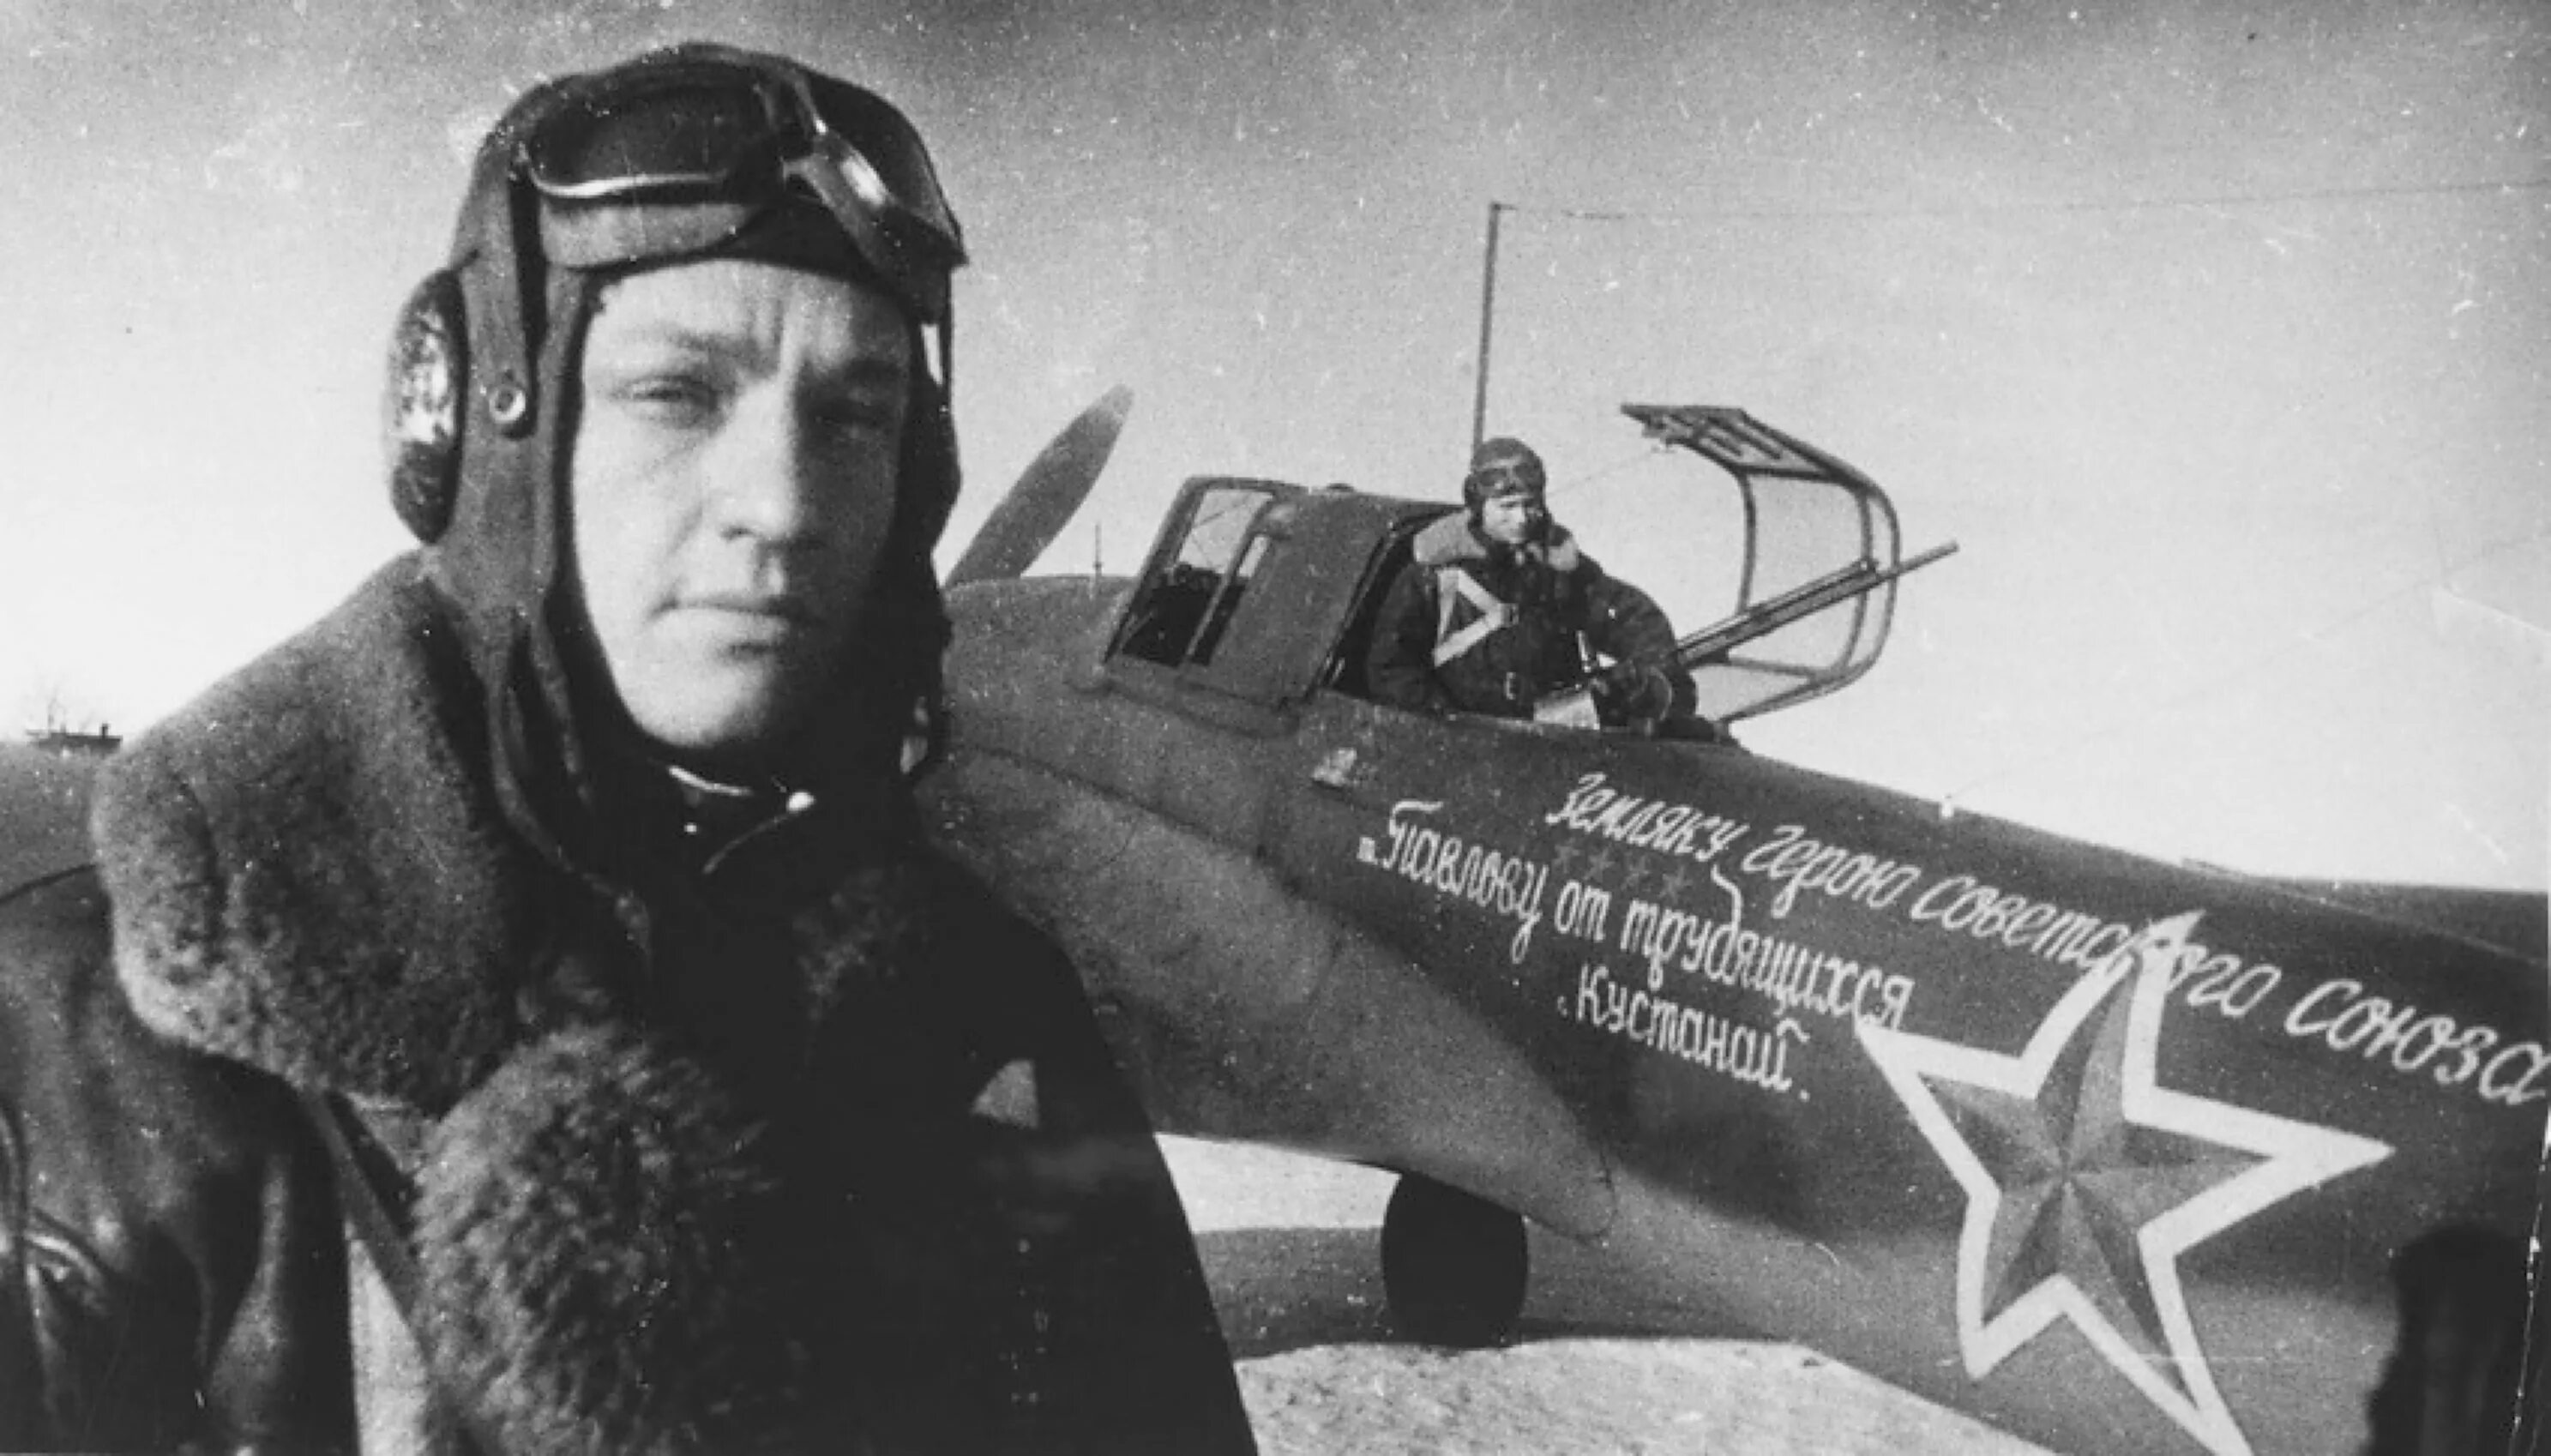 Лётчик Павлов герой советского Союза. Многим летчикам великой